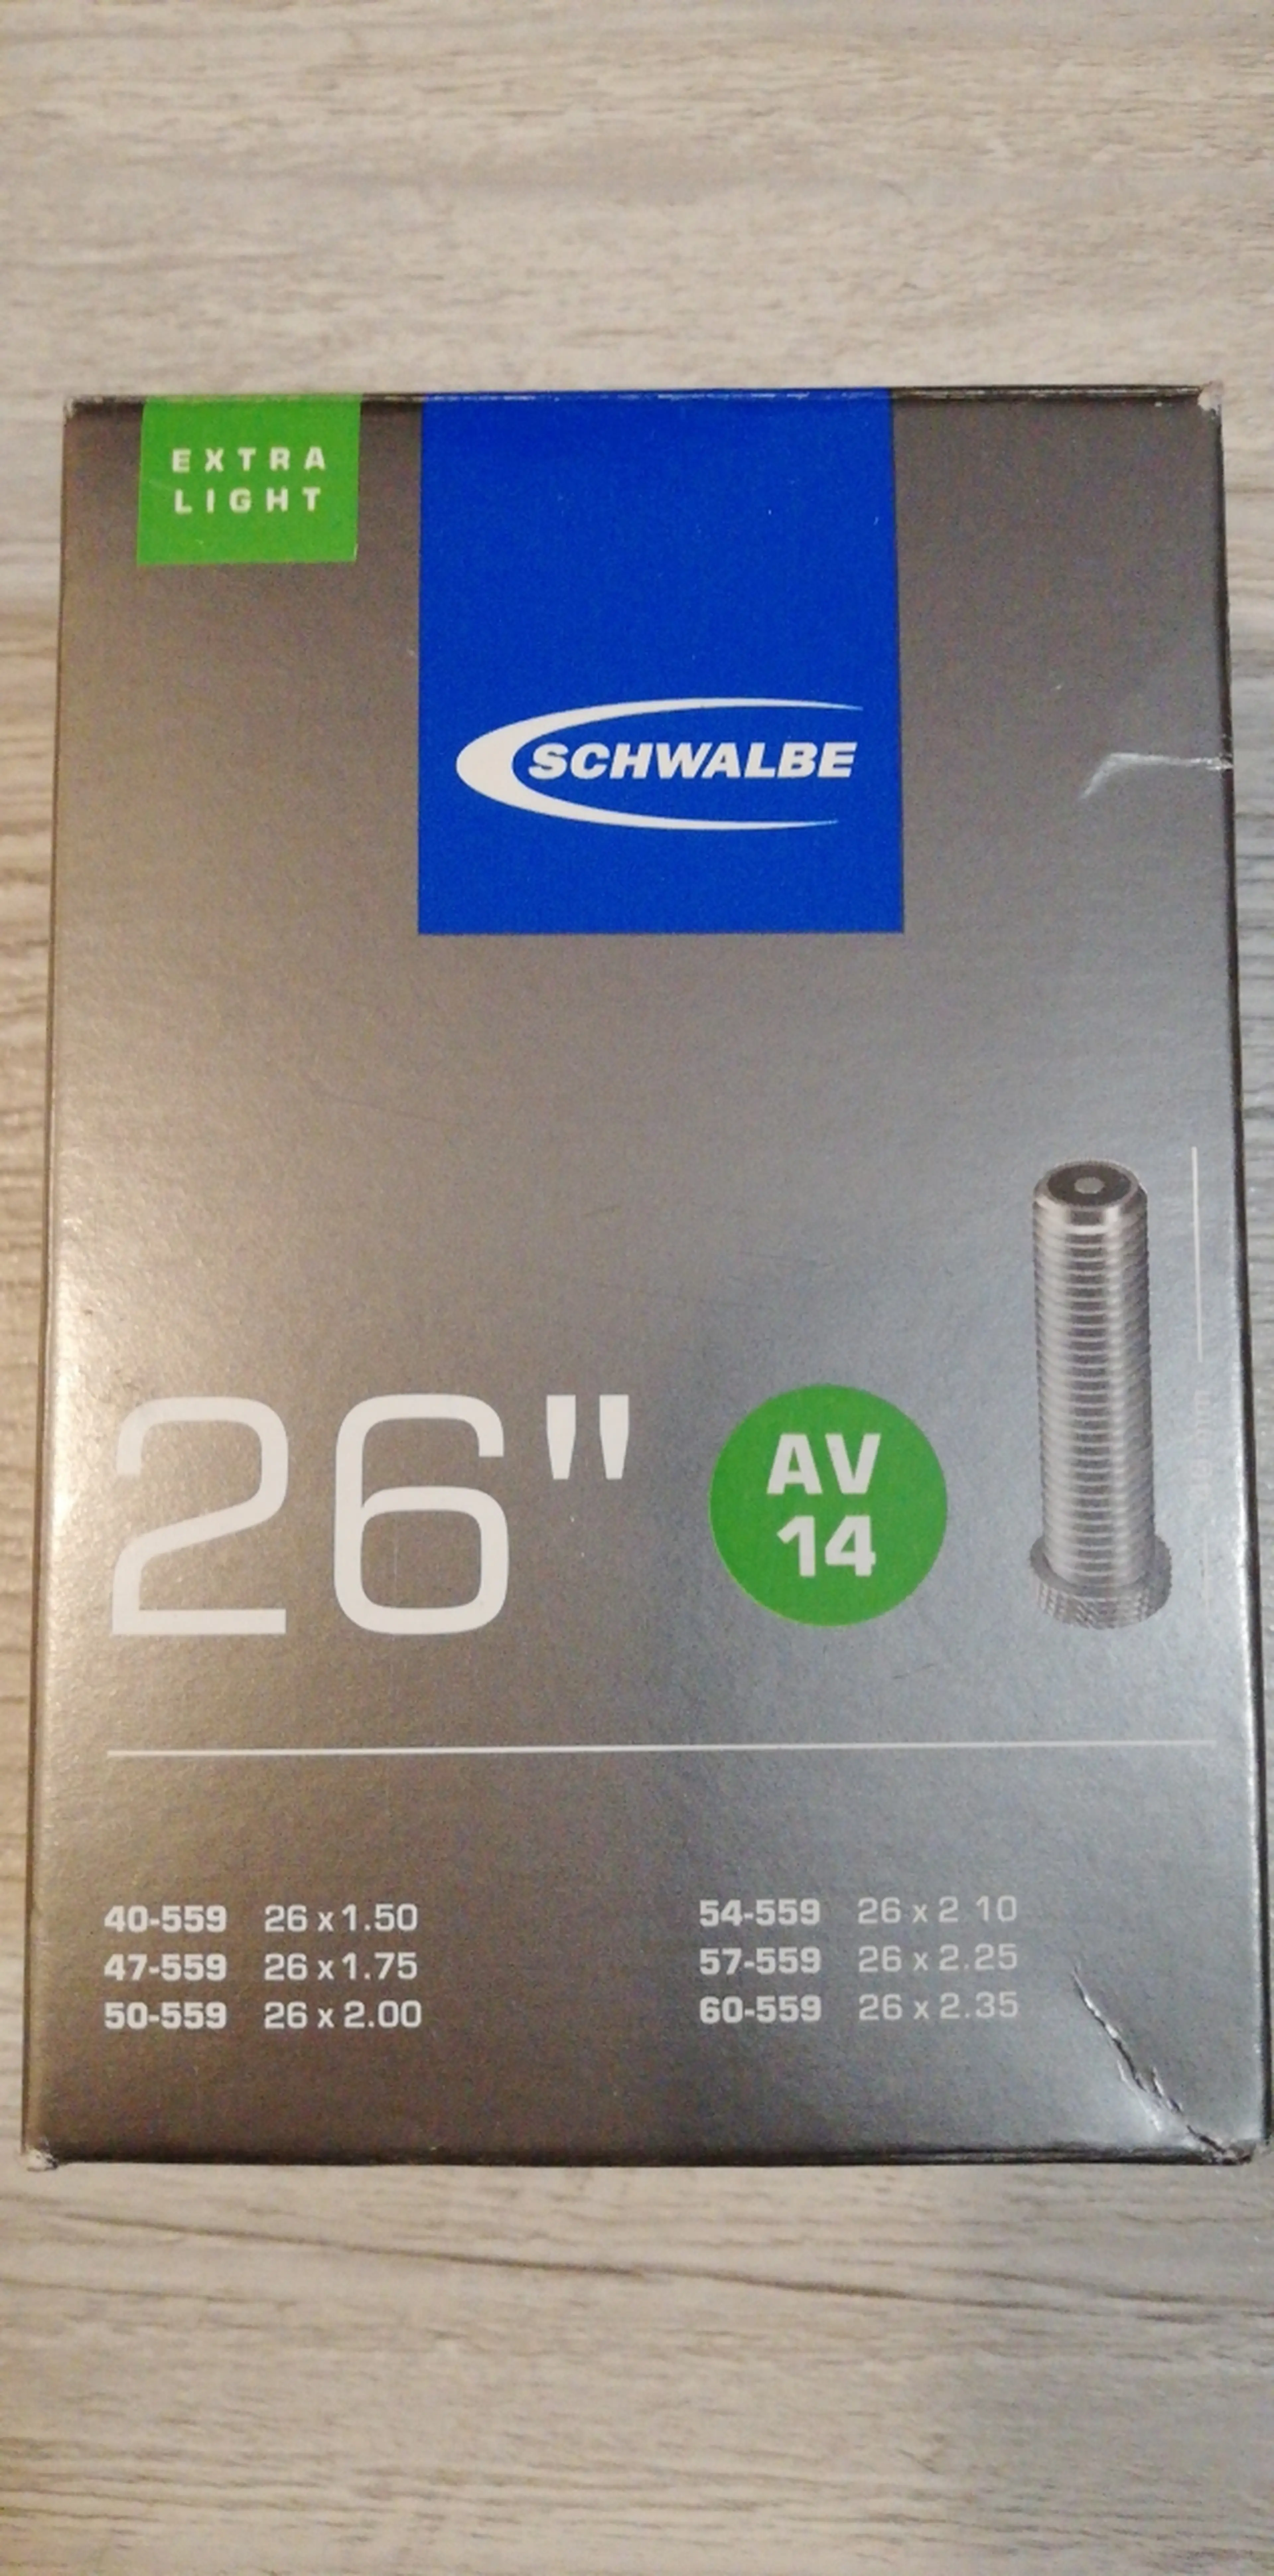 1. Schwalbe 26" camera extra light AV 14  26x1.5-2.35